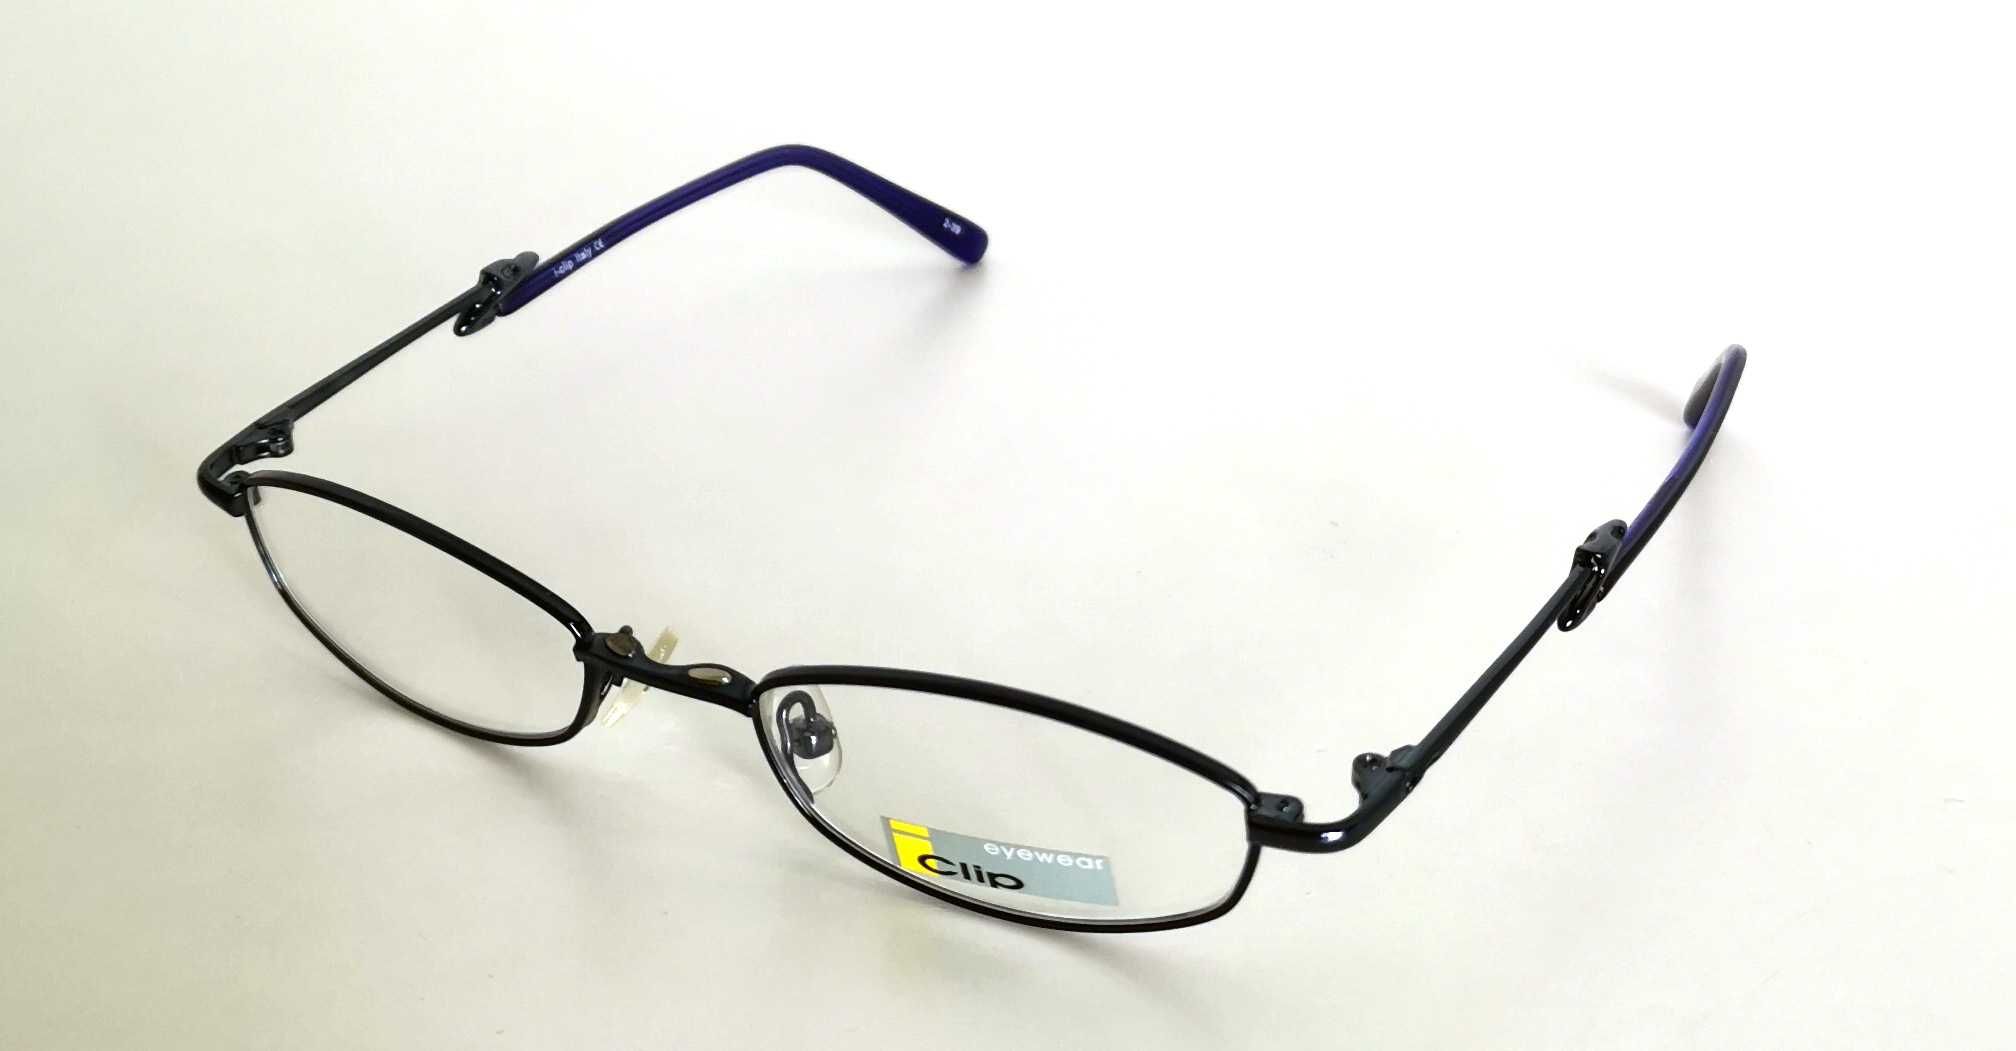 Oprawki do okularów Clip Eyewear Okulary korekcyjne - OKAZJA NAJTANIE